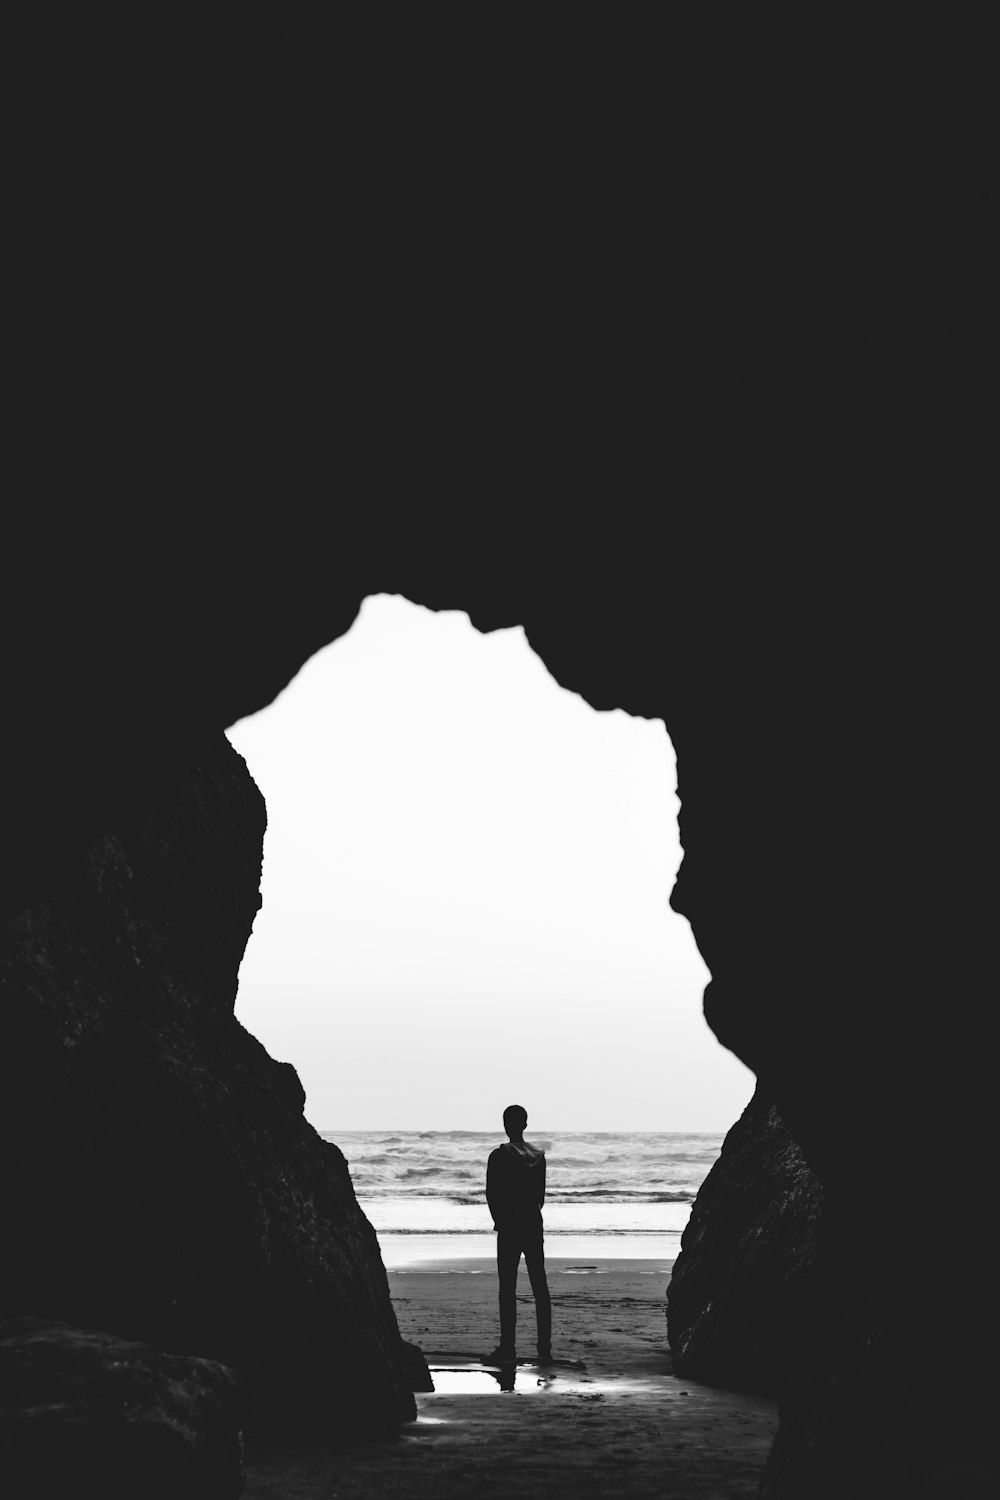 fotografia em tons de cinza do homem em pé na costa